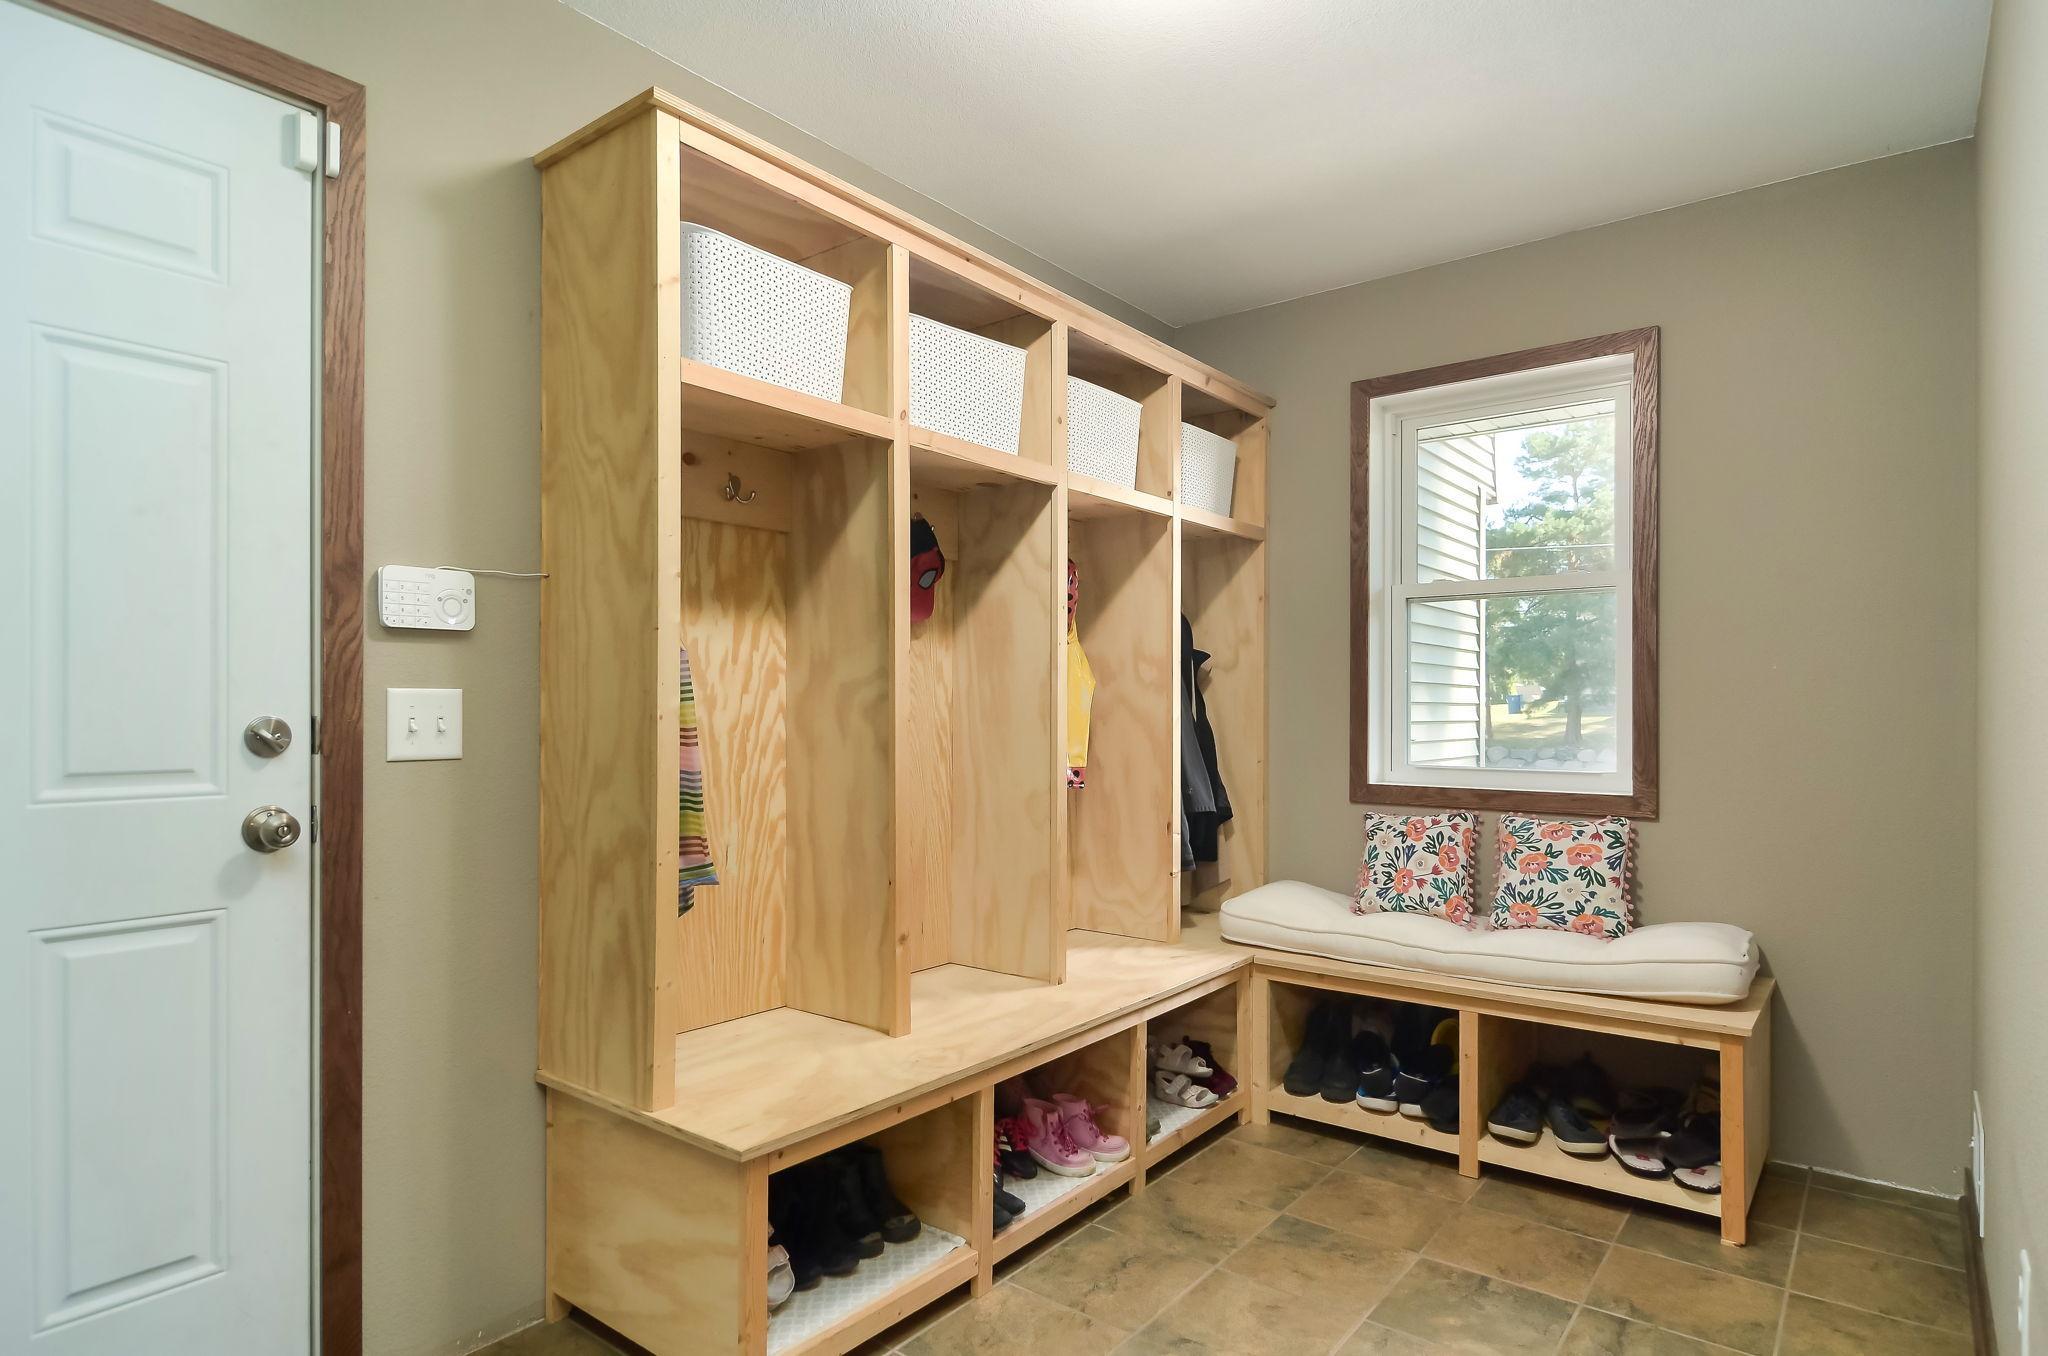 Custom built cabinets keep the mud room organized.